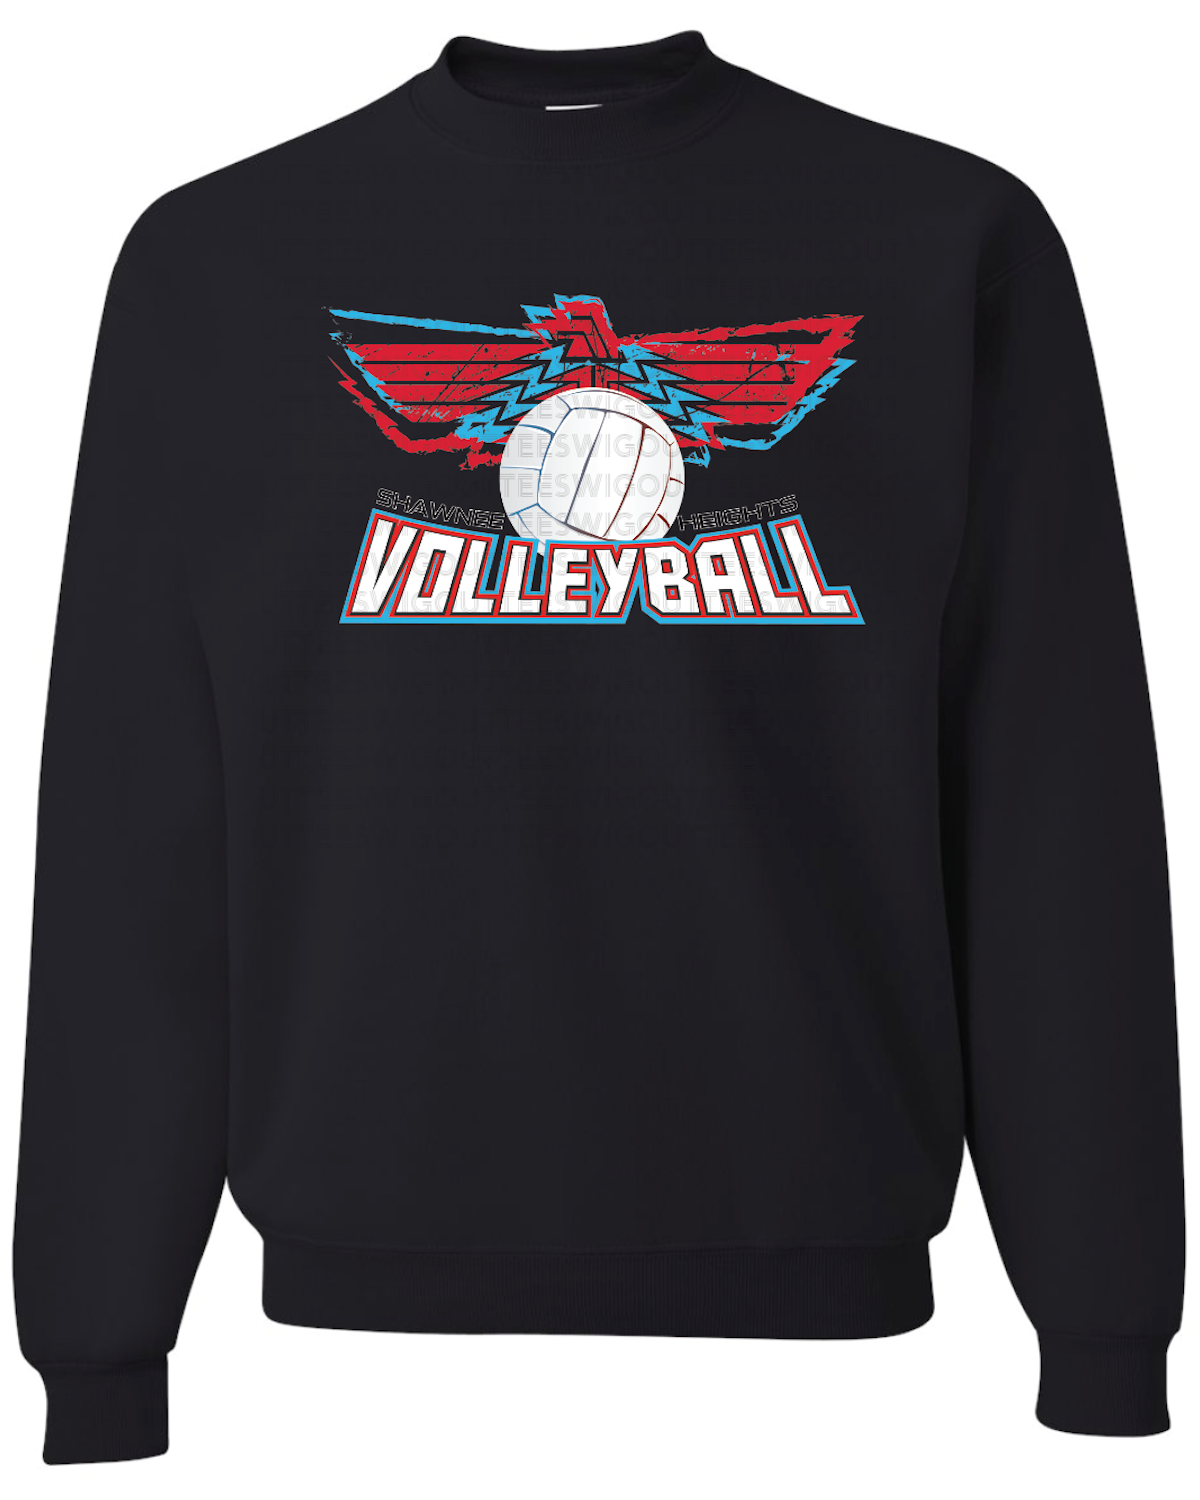 Shawnee Heights Volleyball Jerzees Nublend Crew Sweatshirt